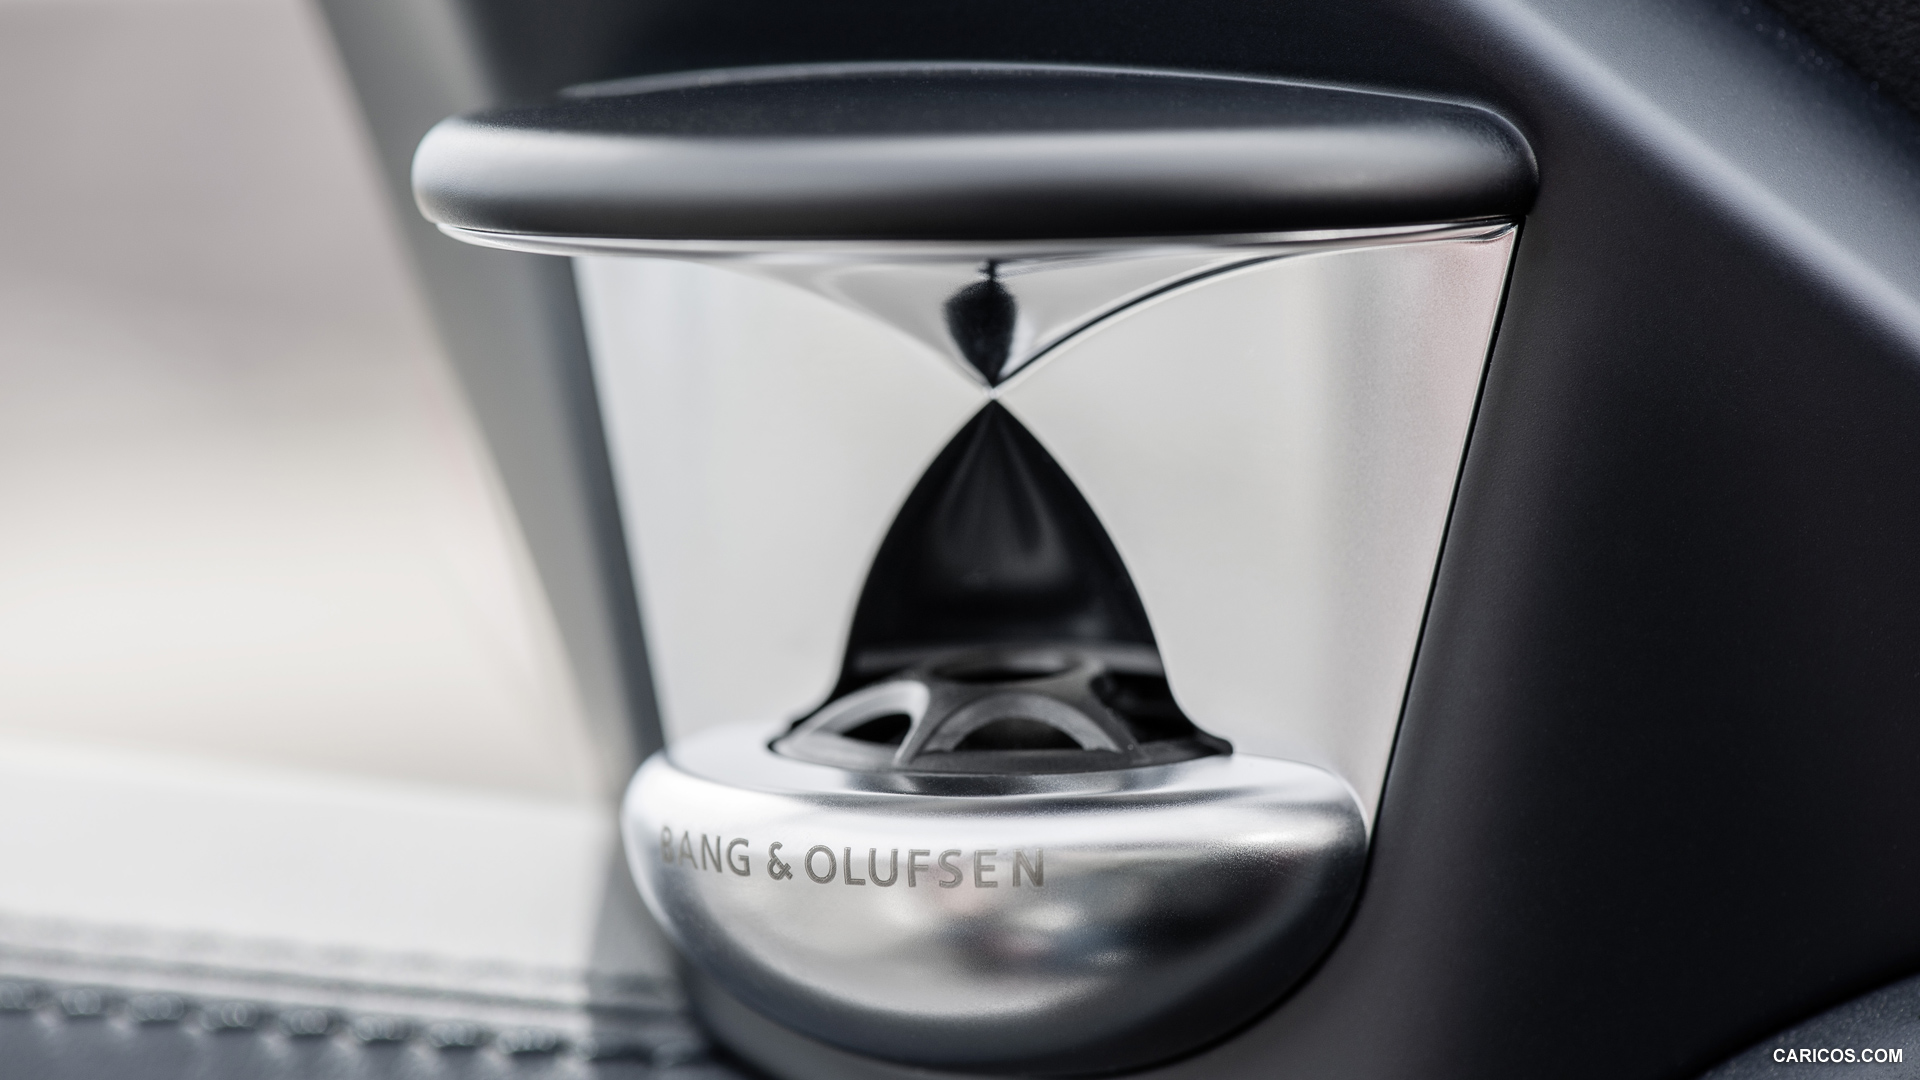 2014 Mercedes-Benz E-Class Bang & Olufsen Speaker - , #43 of 72